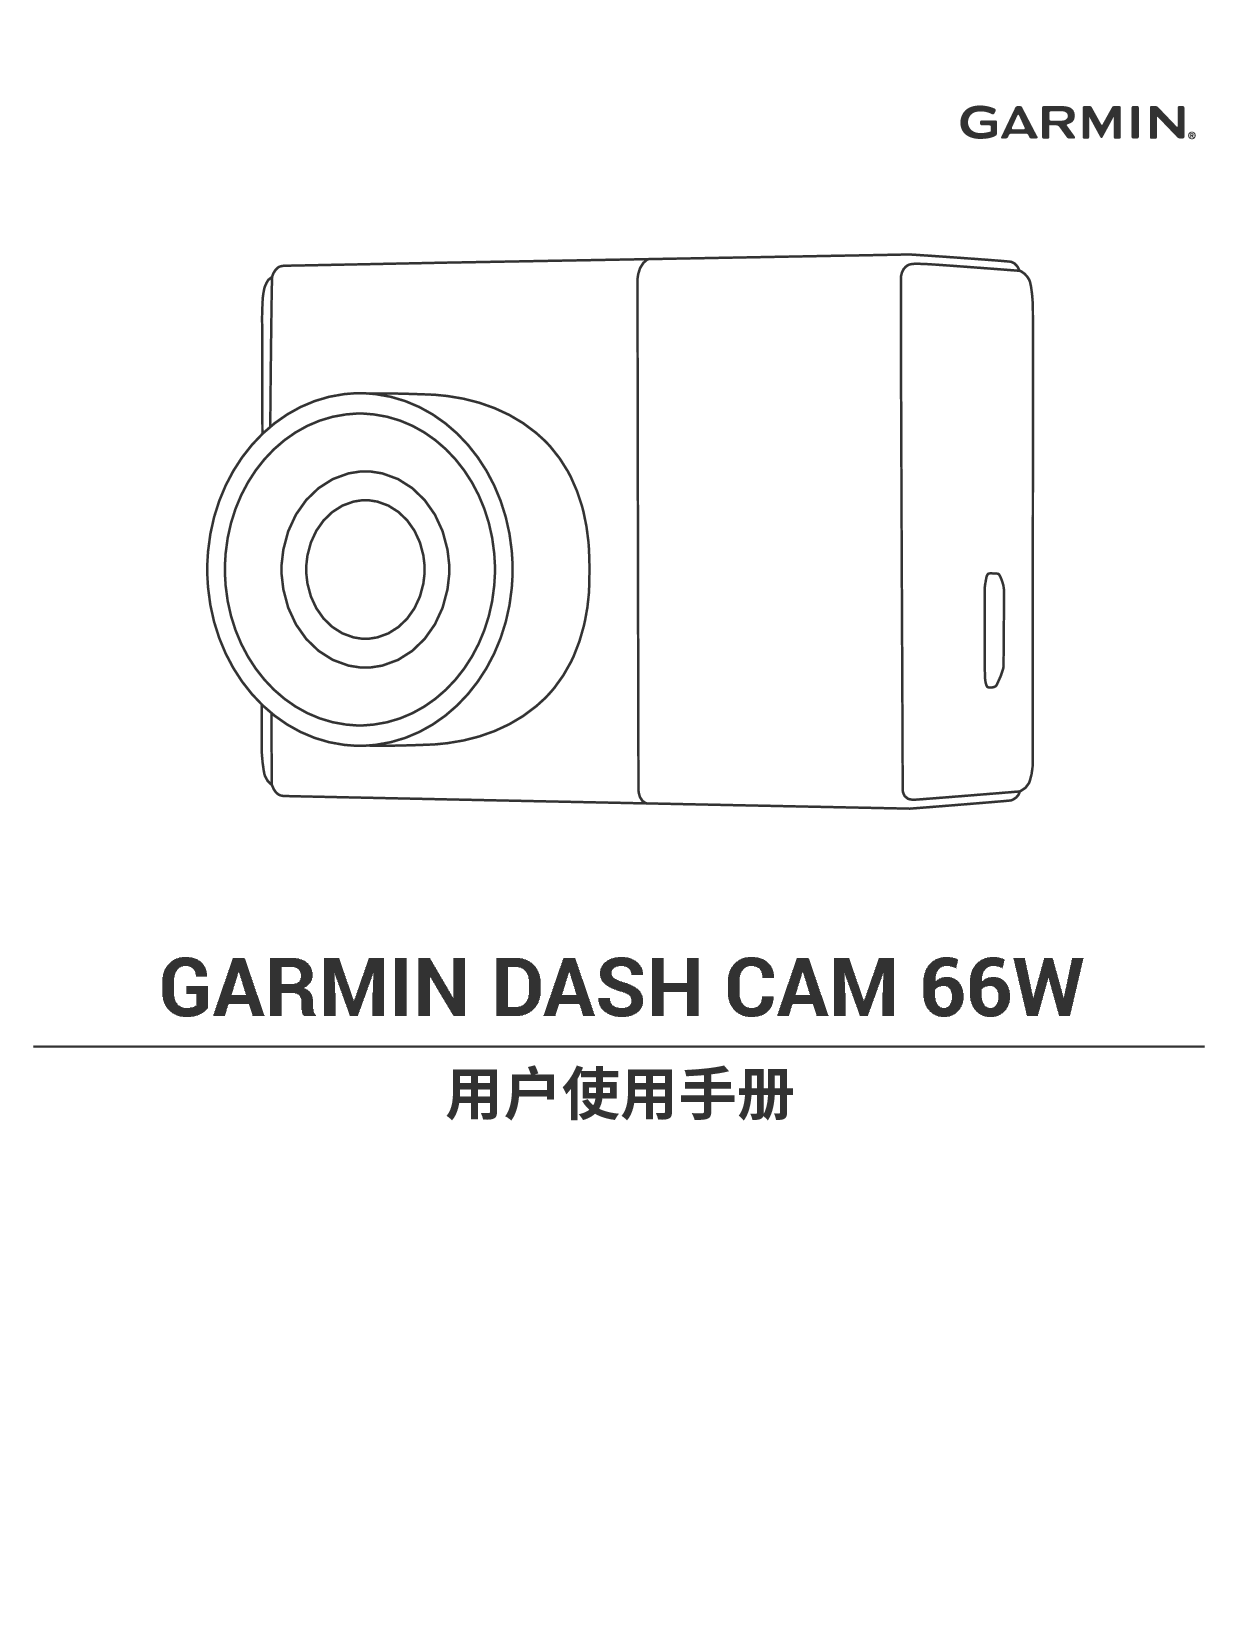 佳明 Garmin DASH CAM 66W 用户手册 封面